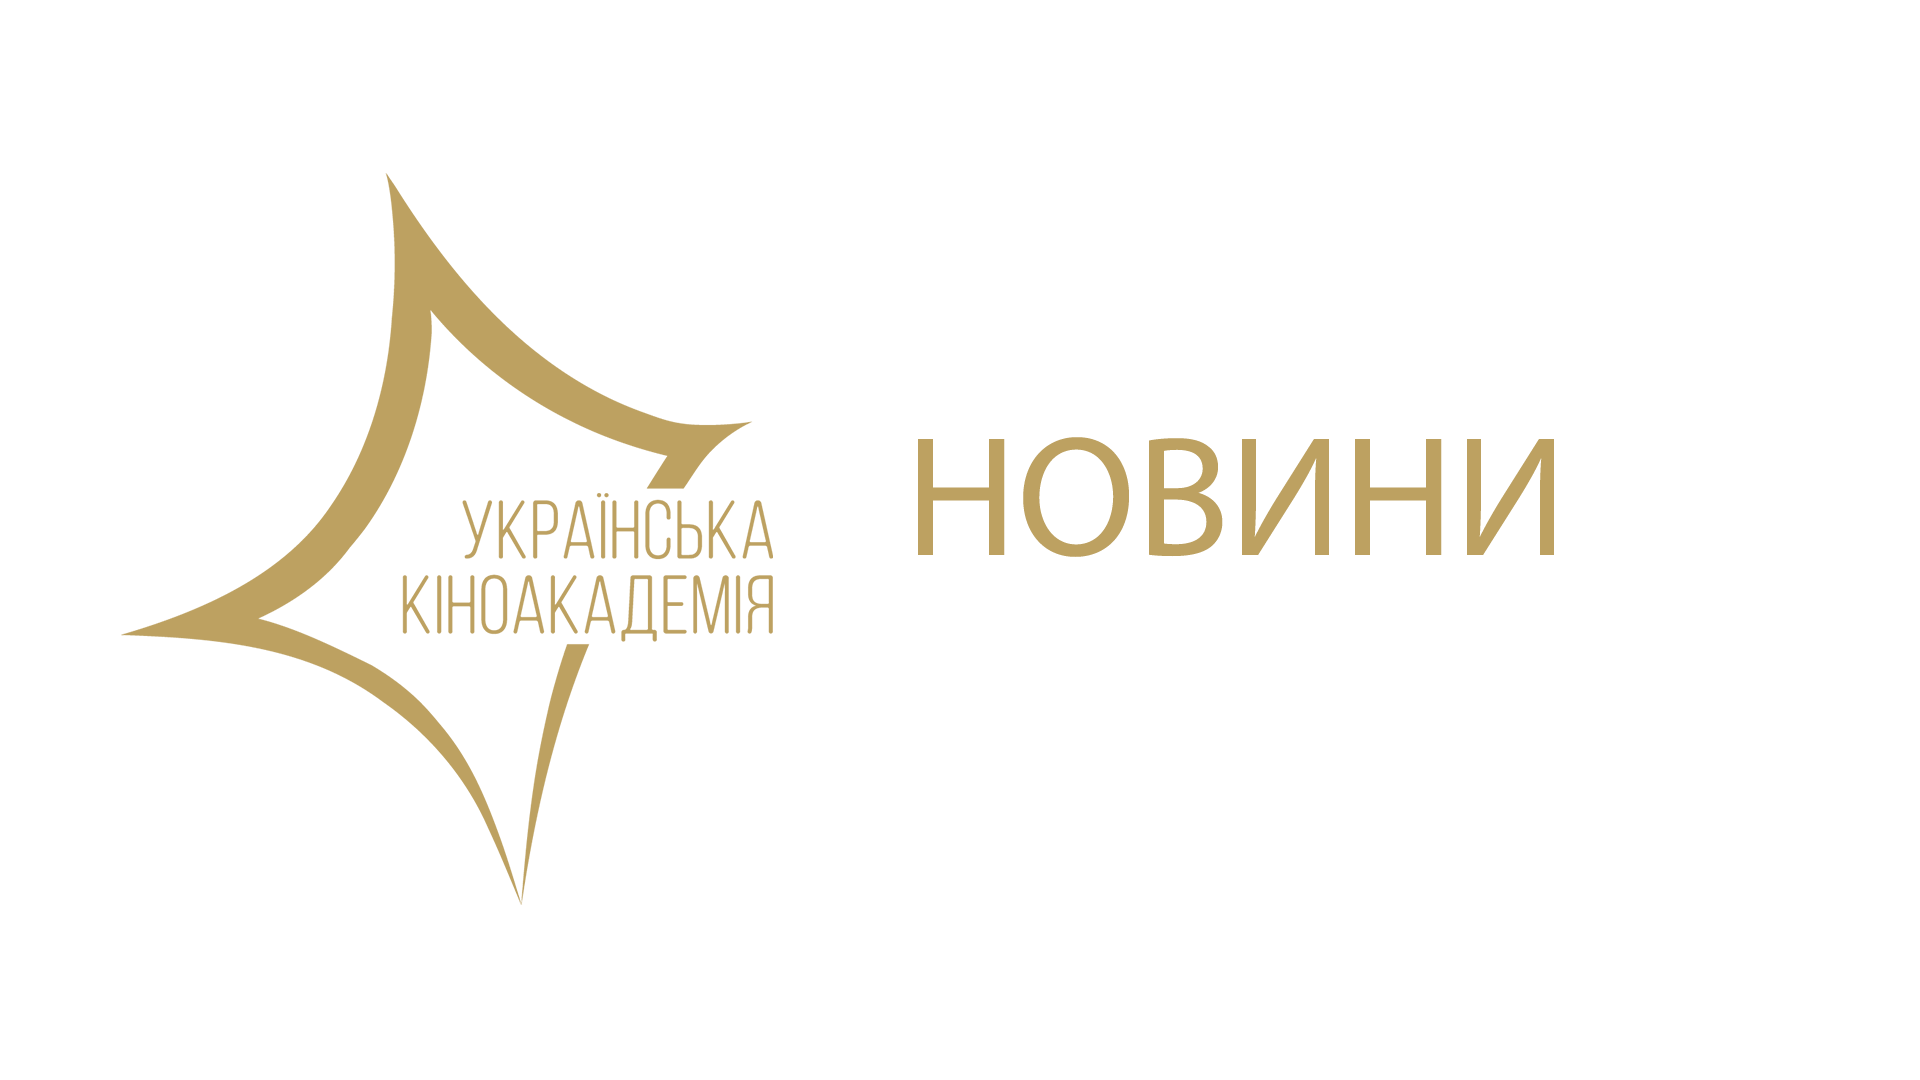 <p>20 квітня відбудеться церемонія вручення нагород Першої Національної Кінопремії. Українська Кіноакадемія оголошує імена тих, хто вручатиме нагороди у 14 номінаціях.</p>